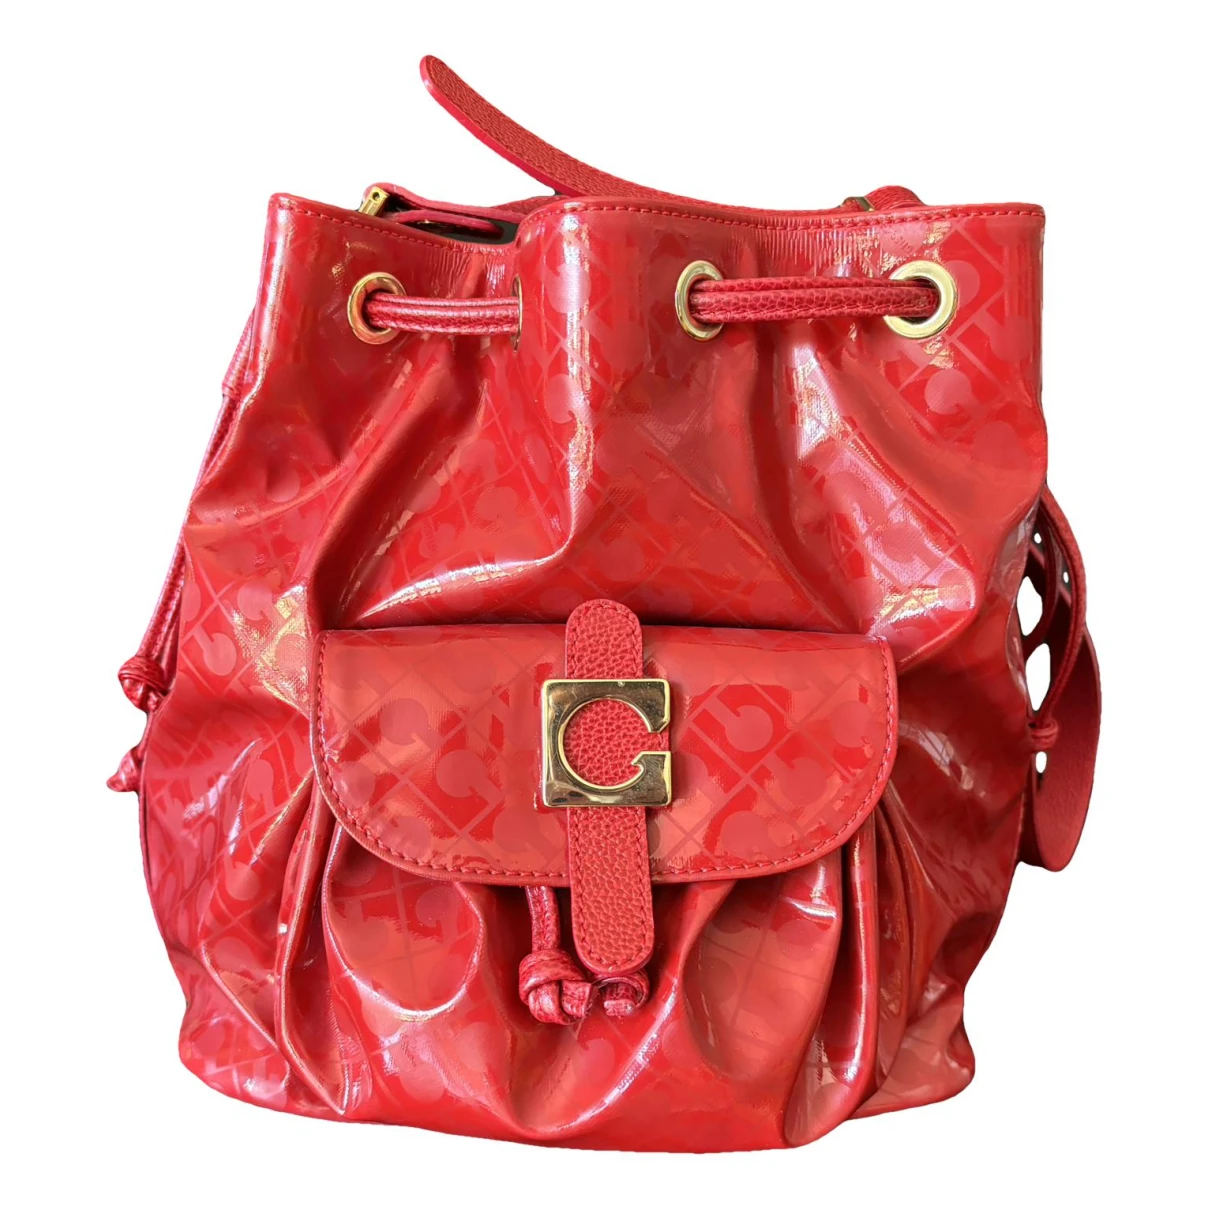 Pre-owned Gherardini Handbag In Red